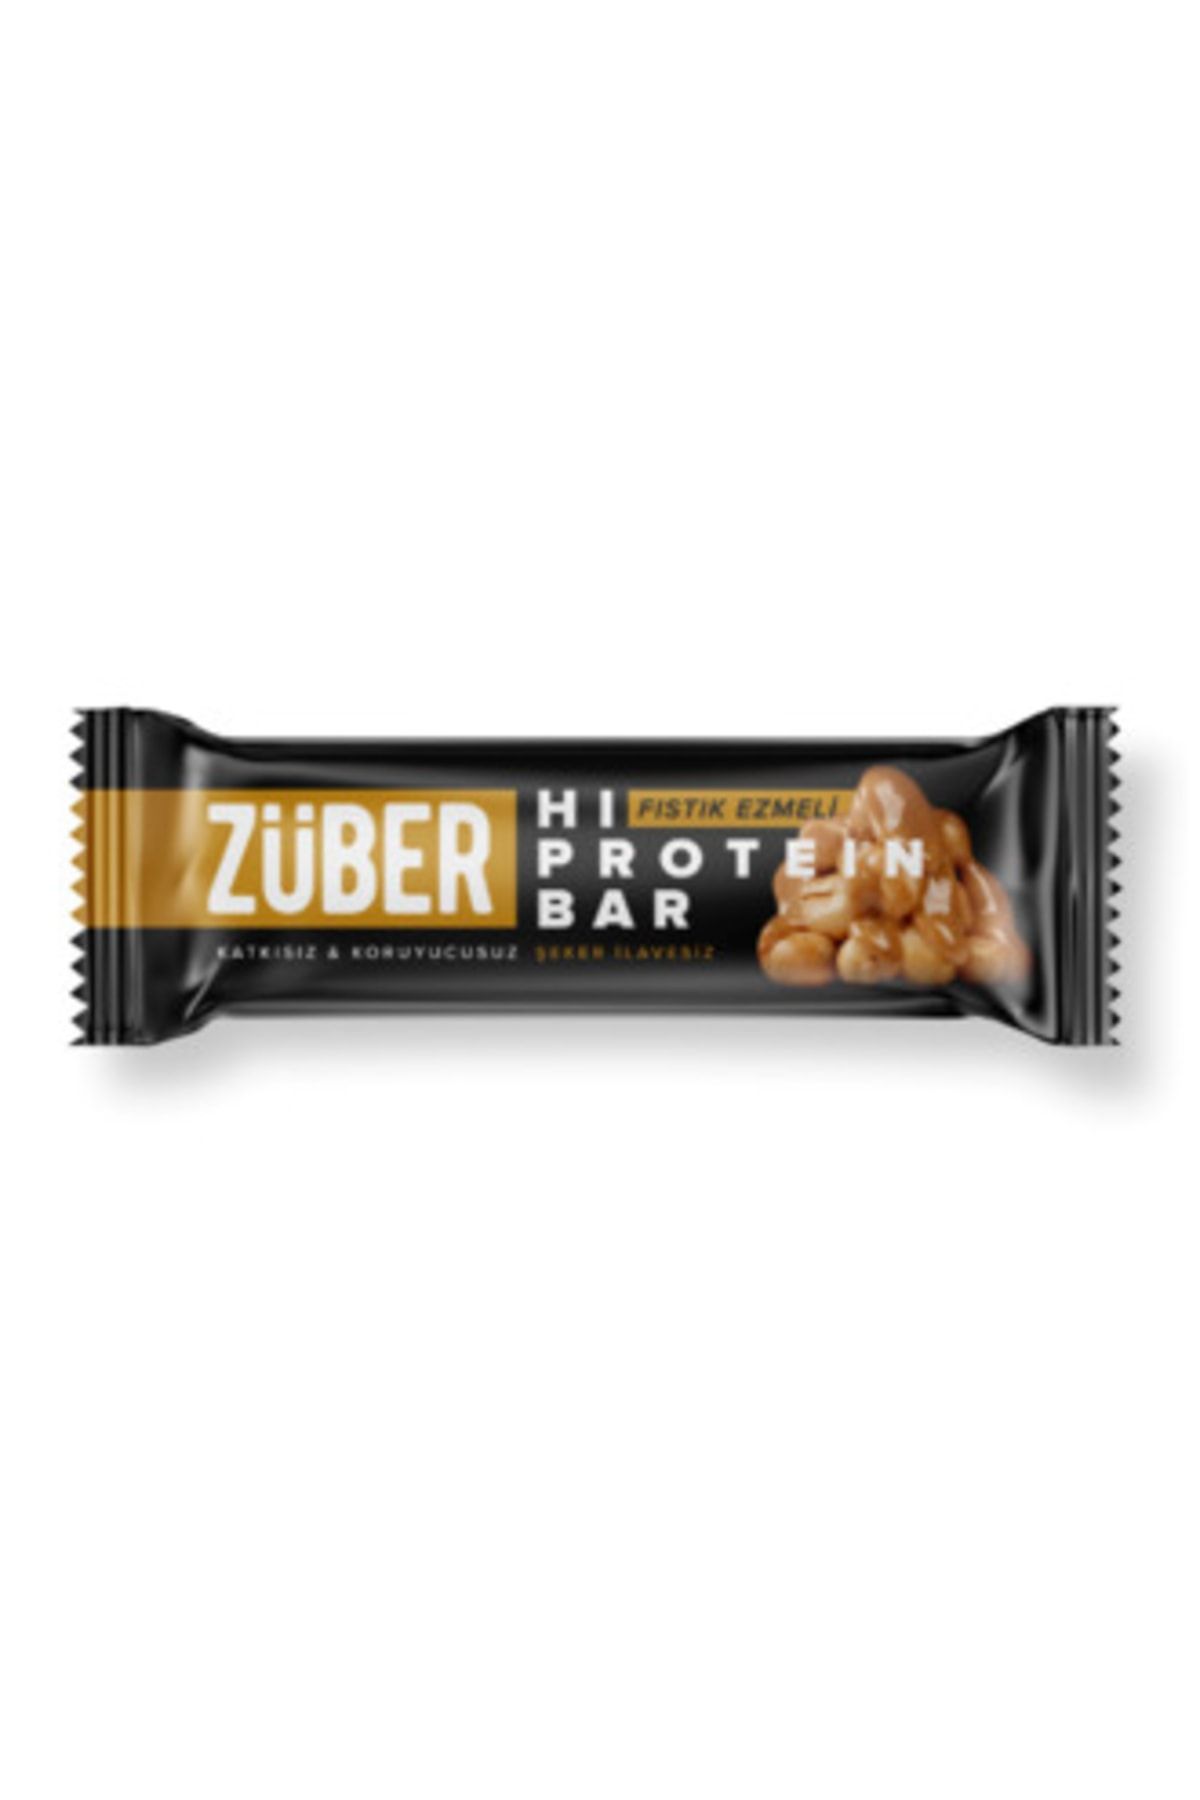 Züber Şeker Ilavesiz Fıstık Ezmeli Hi-protein Bar 45 G ( 2 Adet )